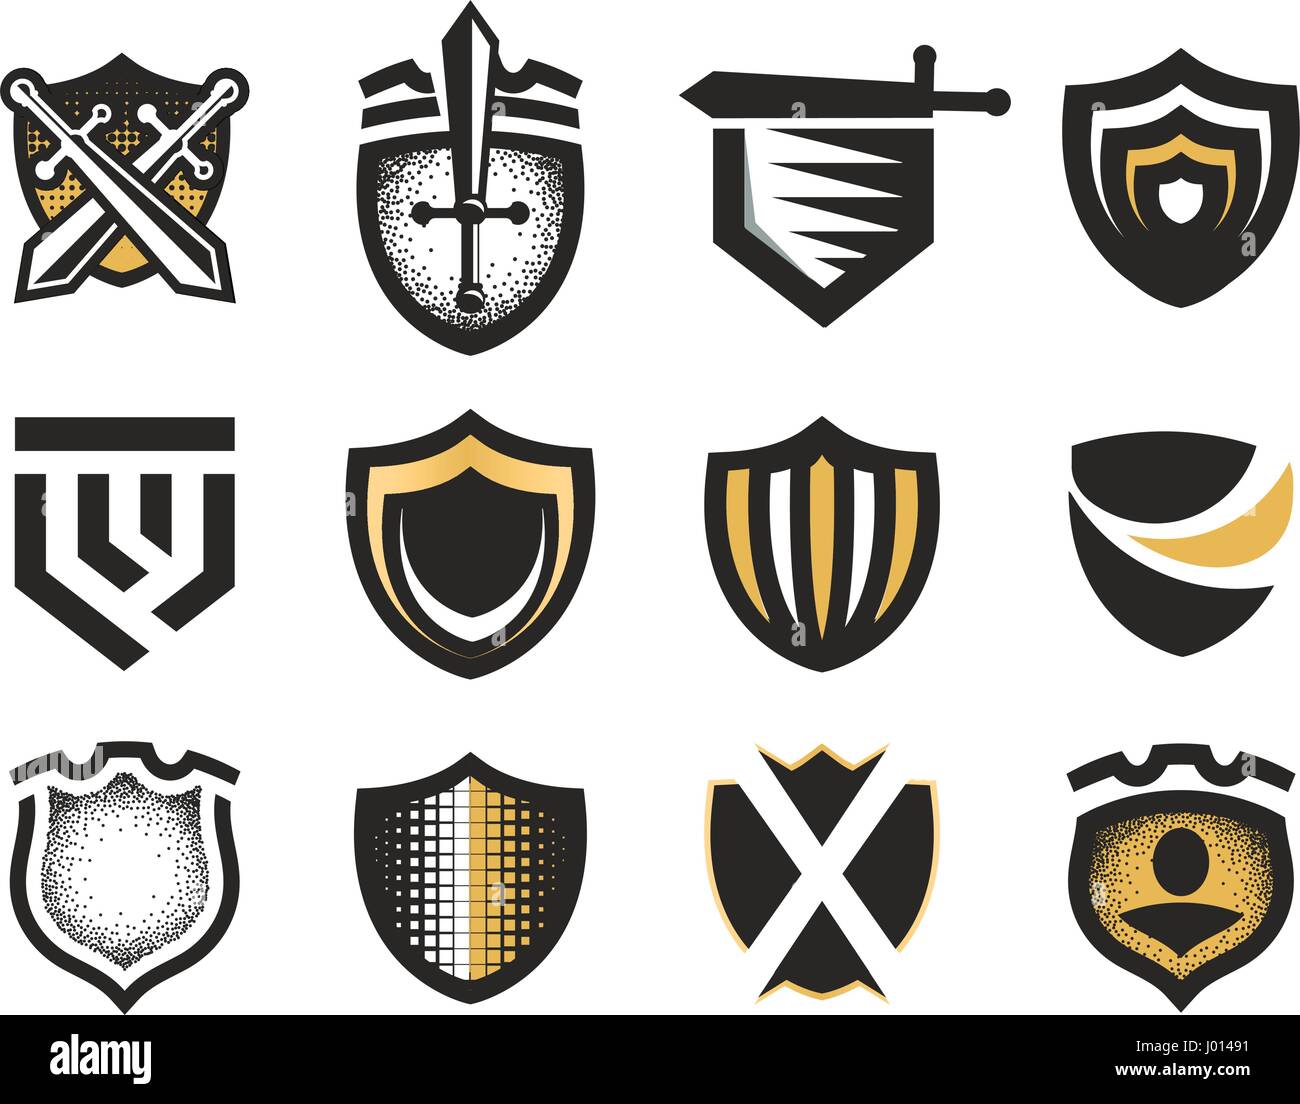 Isolierte abstrakt mittelalterliche Schilde Logos Set, Wappen Logos Sammlung auf weißem Hintergrund-Vektor-illustration Stock Vektor